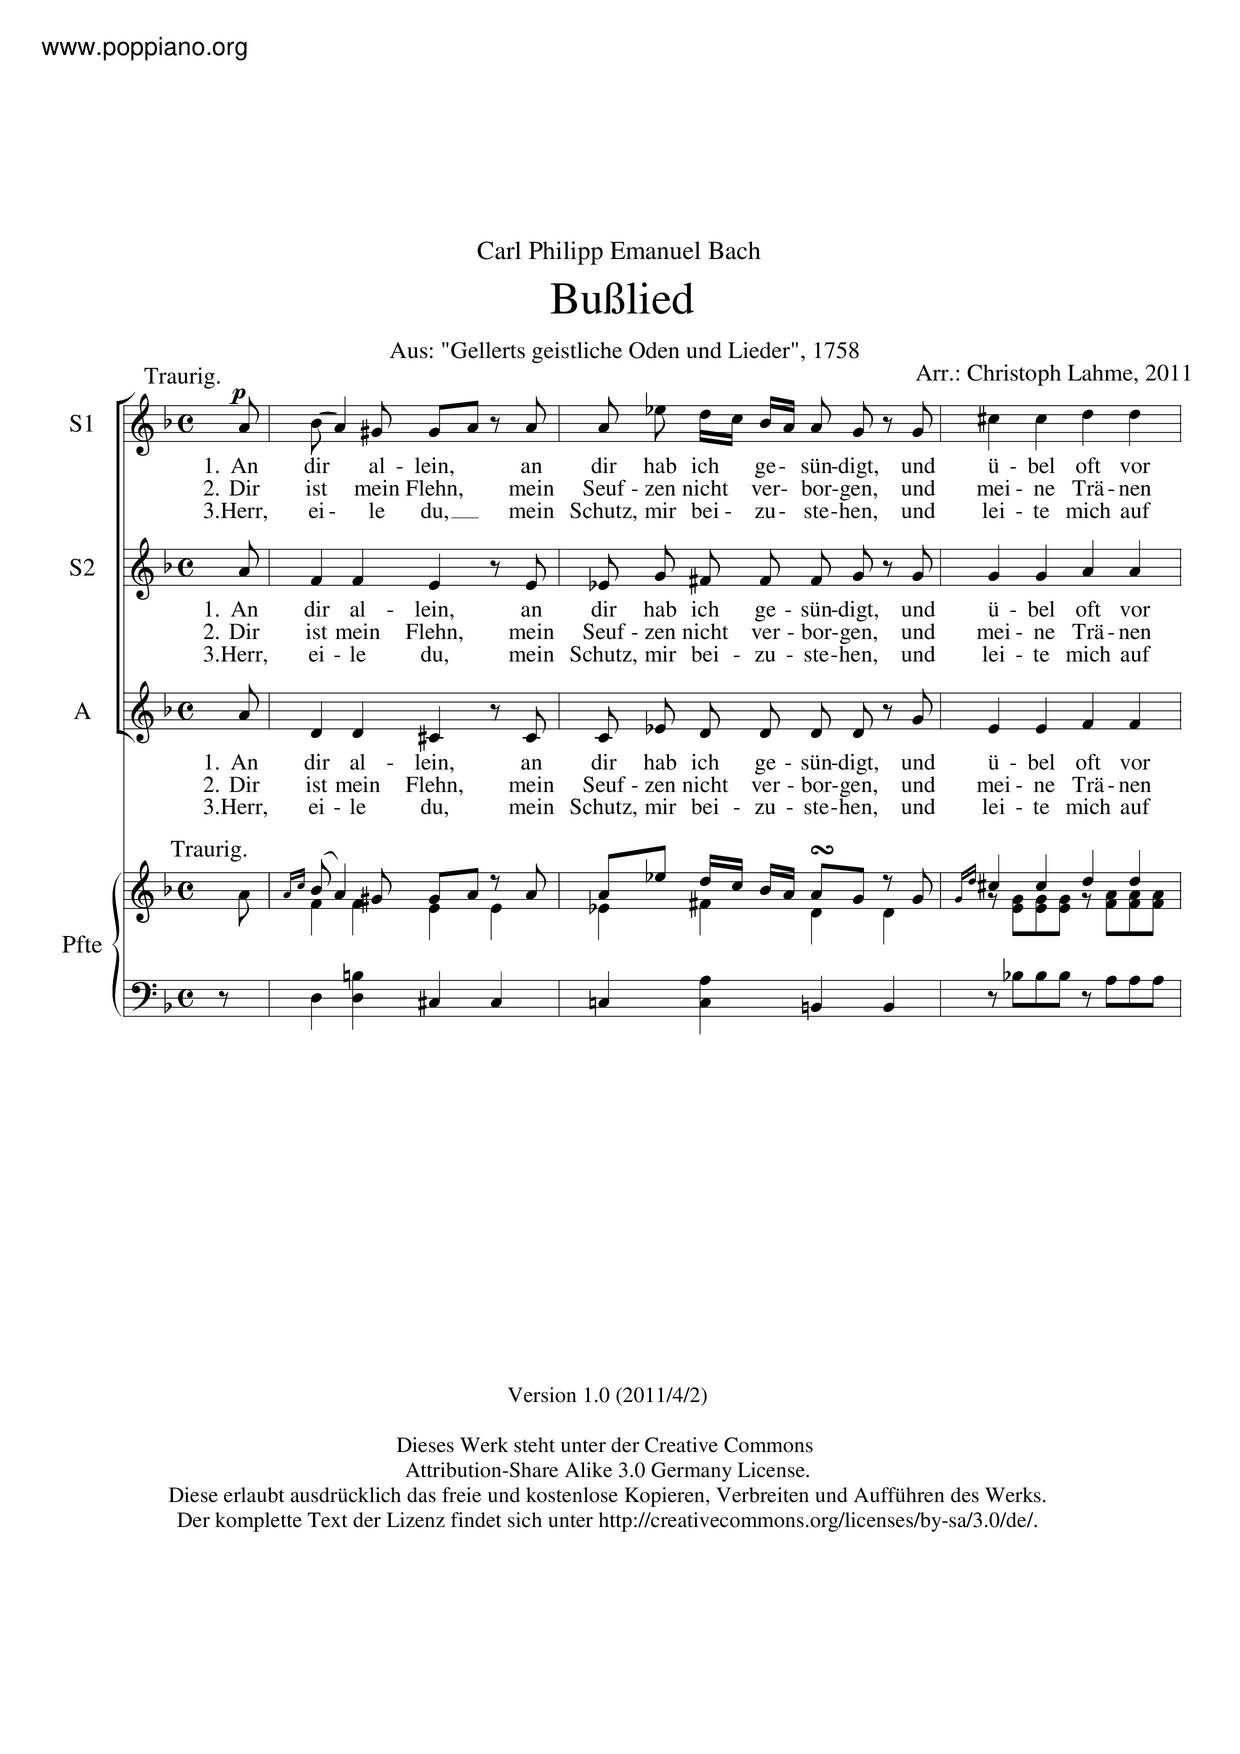 Sacred Odes And Lieder I, H. 686 Score